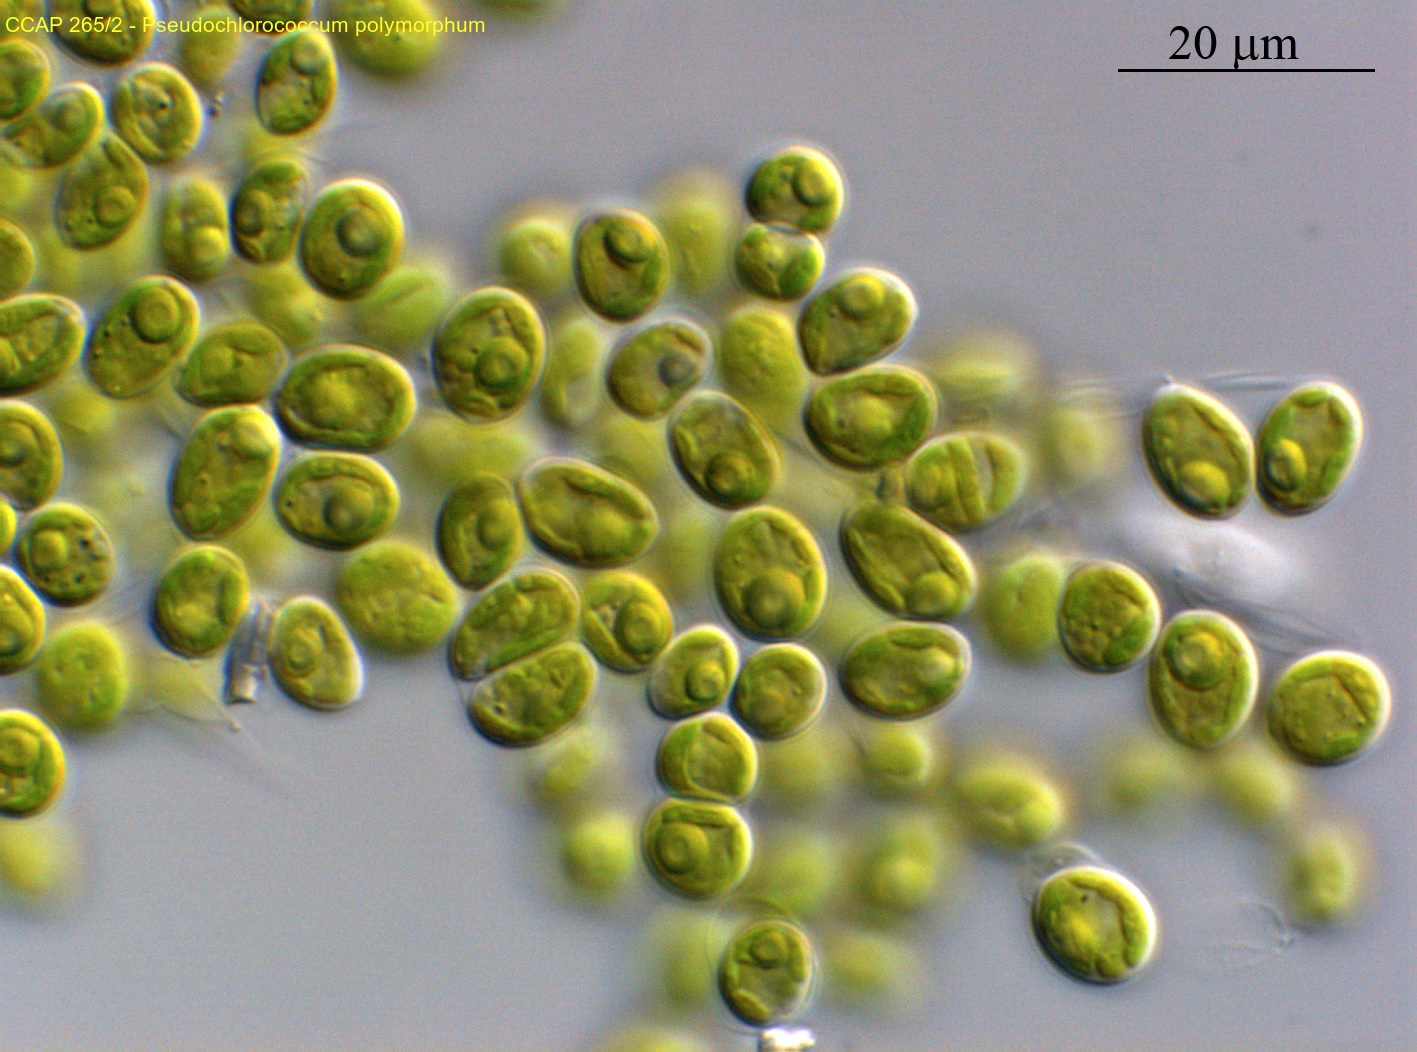 algae_Pseudochloroccum